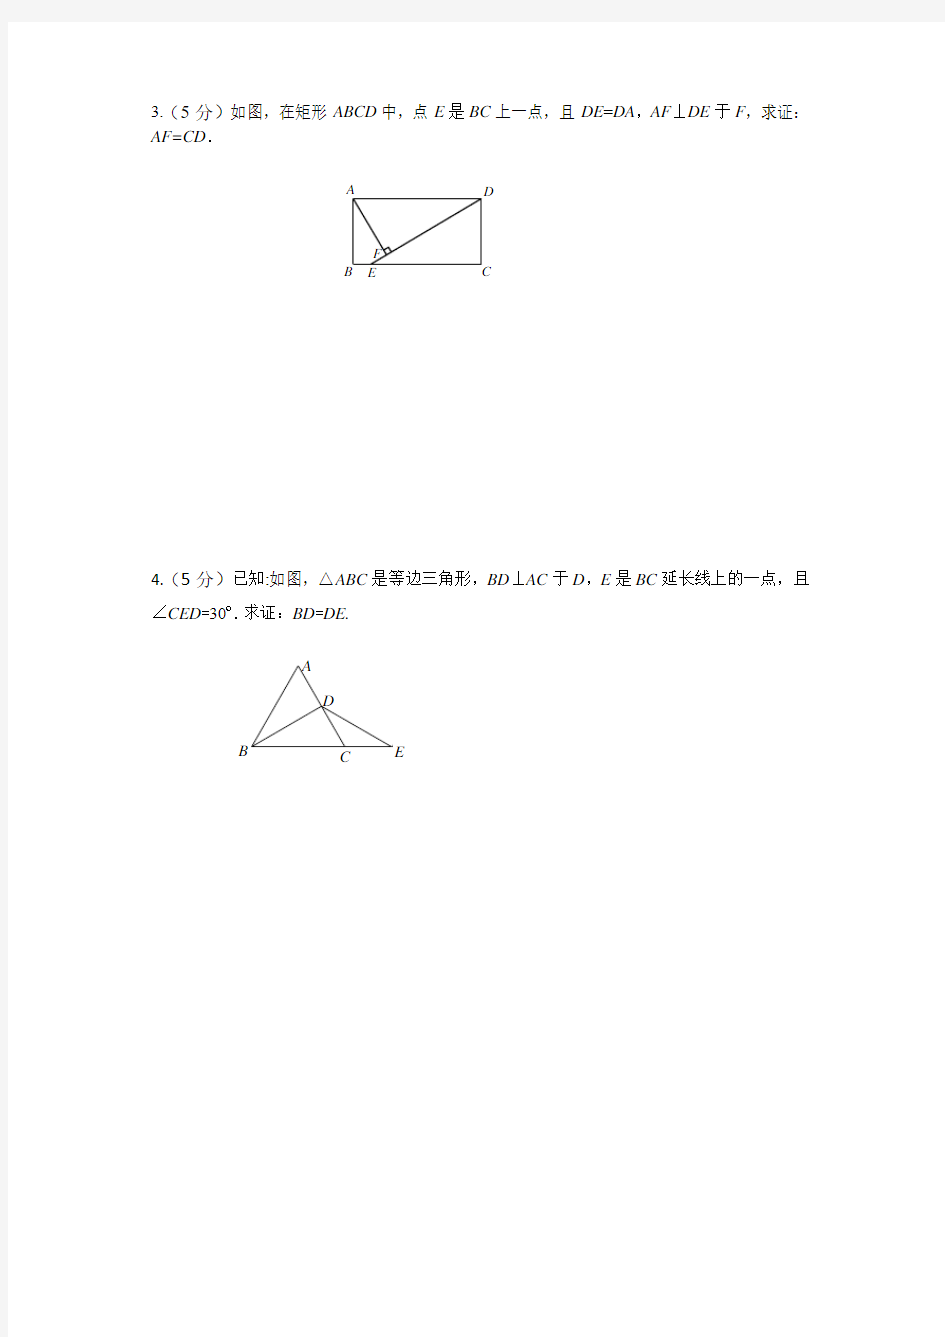 2017年北京中考一模数学考试各区汇总-类第19题(简单证明和推导题型) (11区)